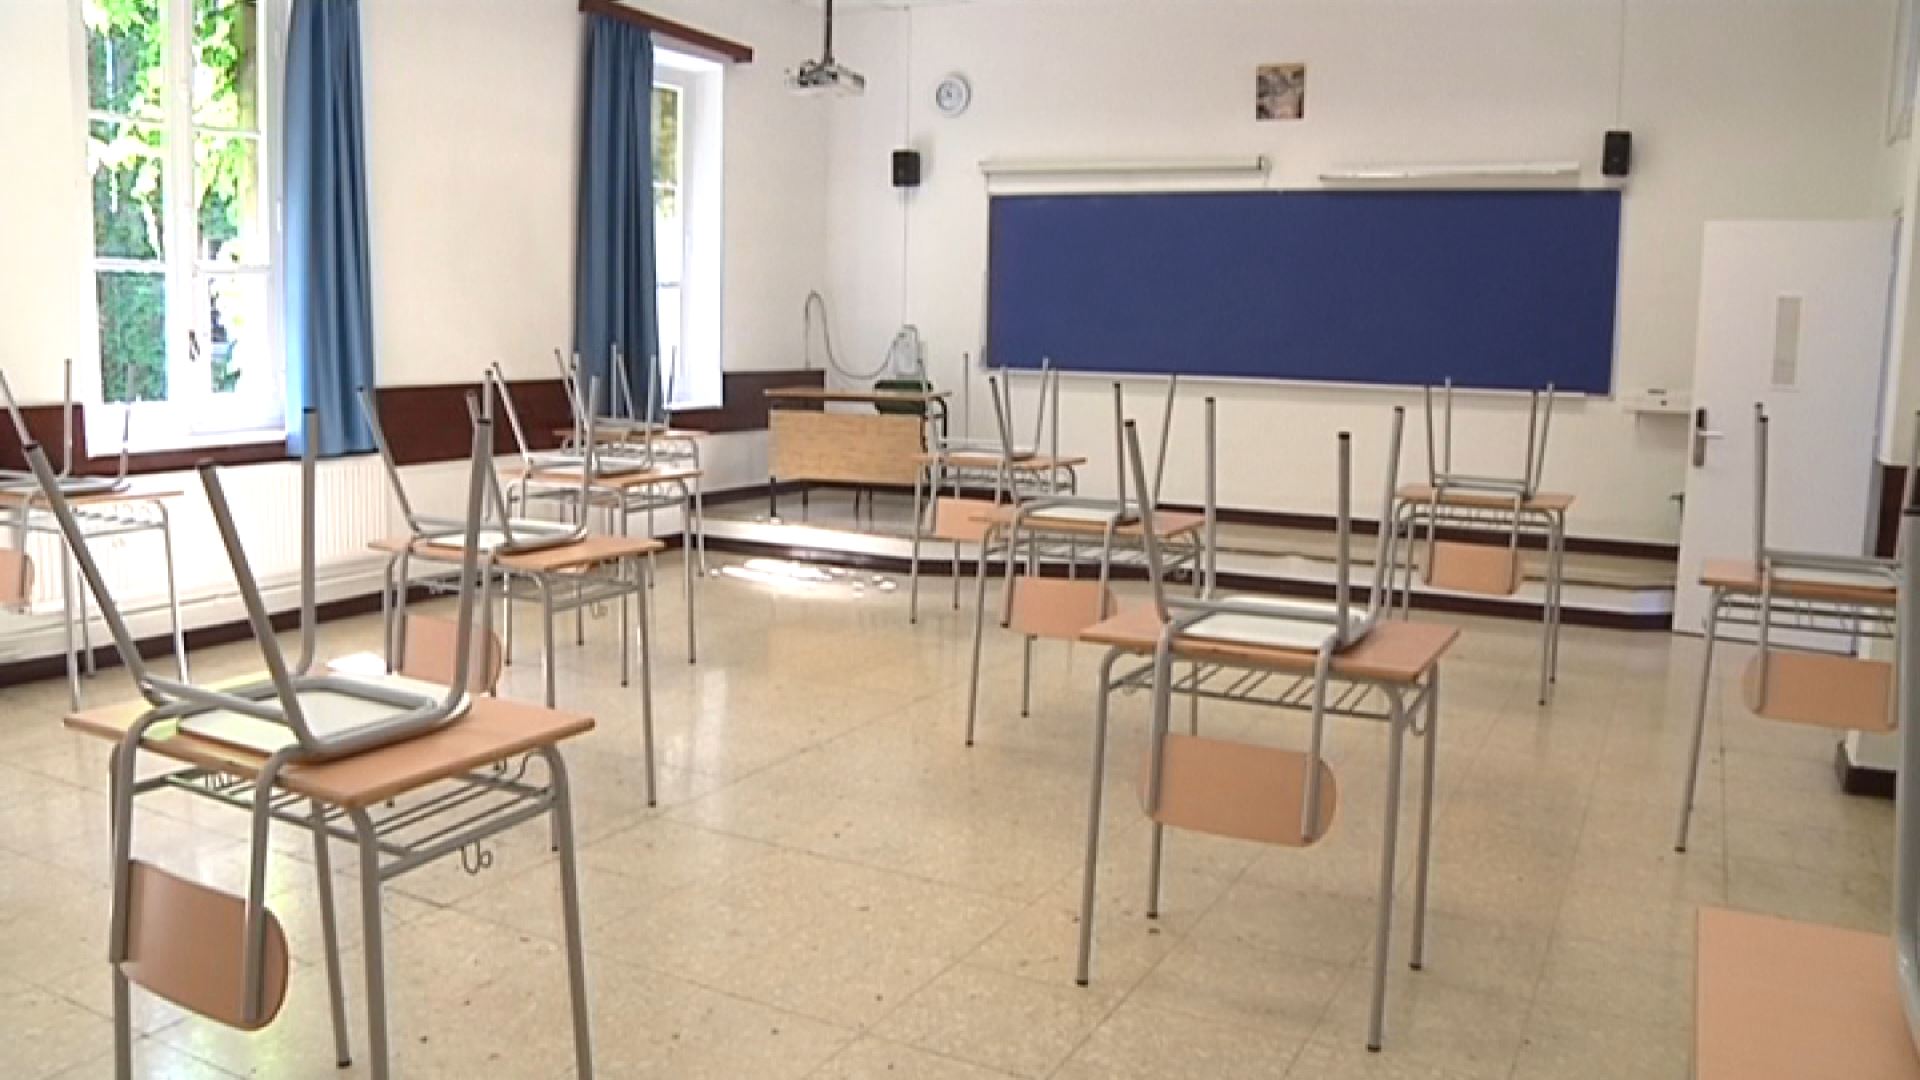 Vídeo COVID-19: Los centros escolares preparan las aulas para la vuelta el  lunes | Sociedad | EiTB